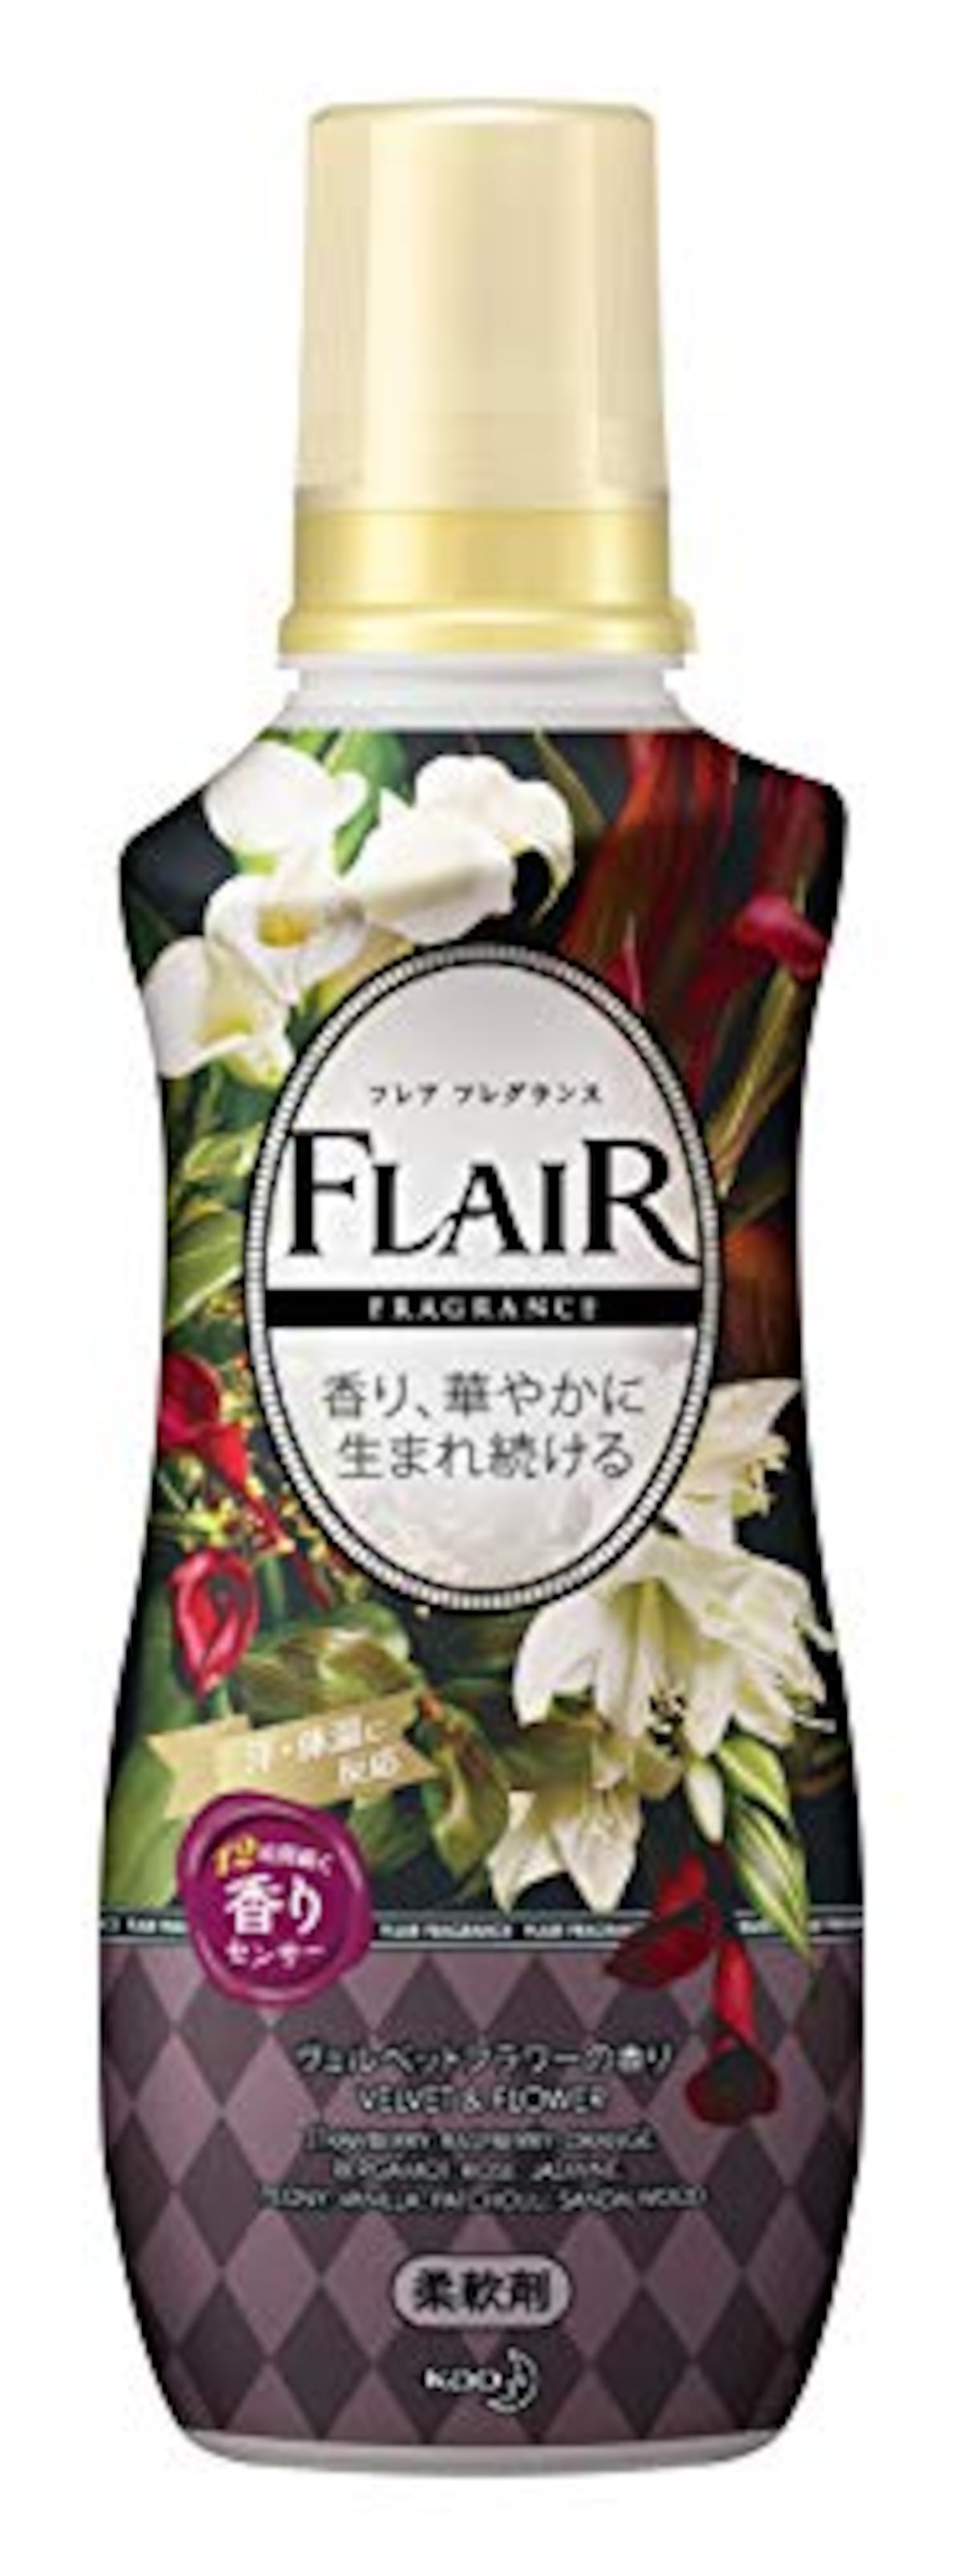  フレアフレグランス ヴェルベット&フラワーの香り画像2 